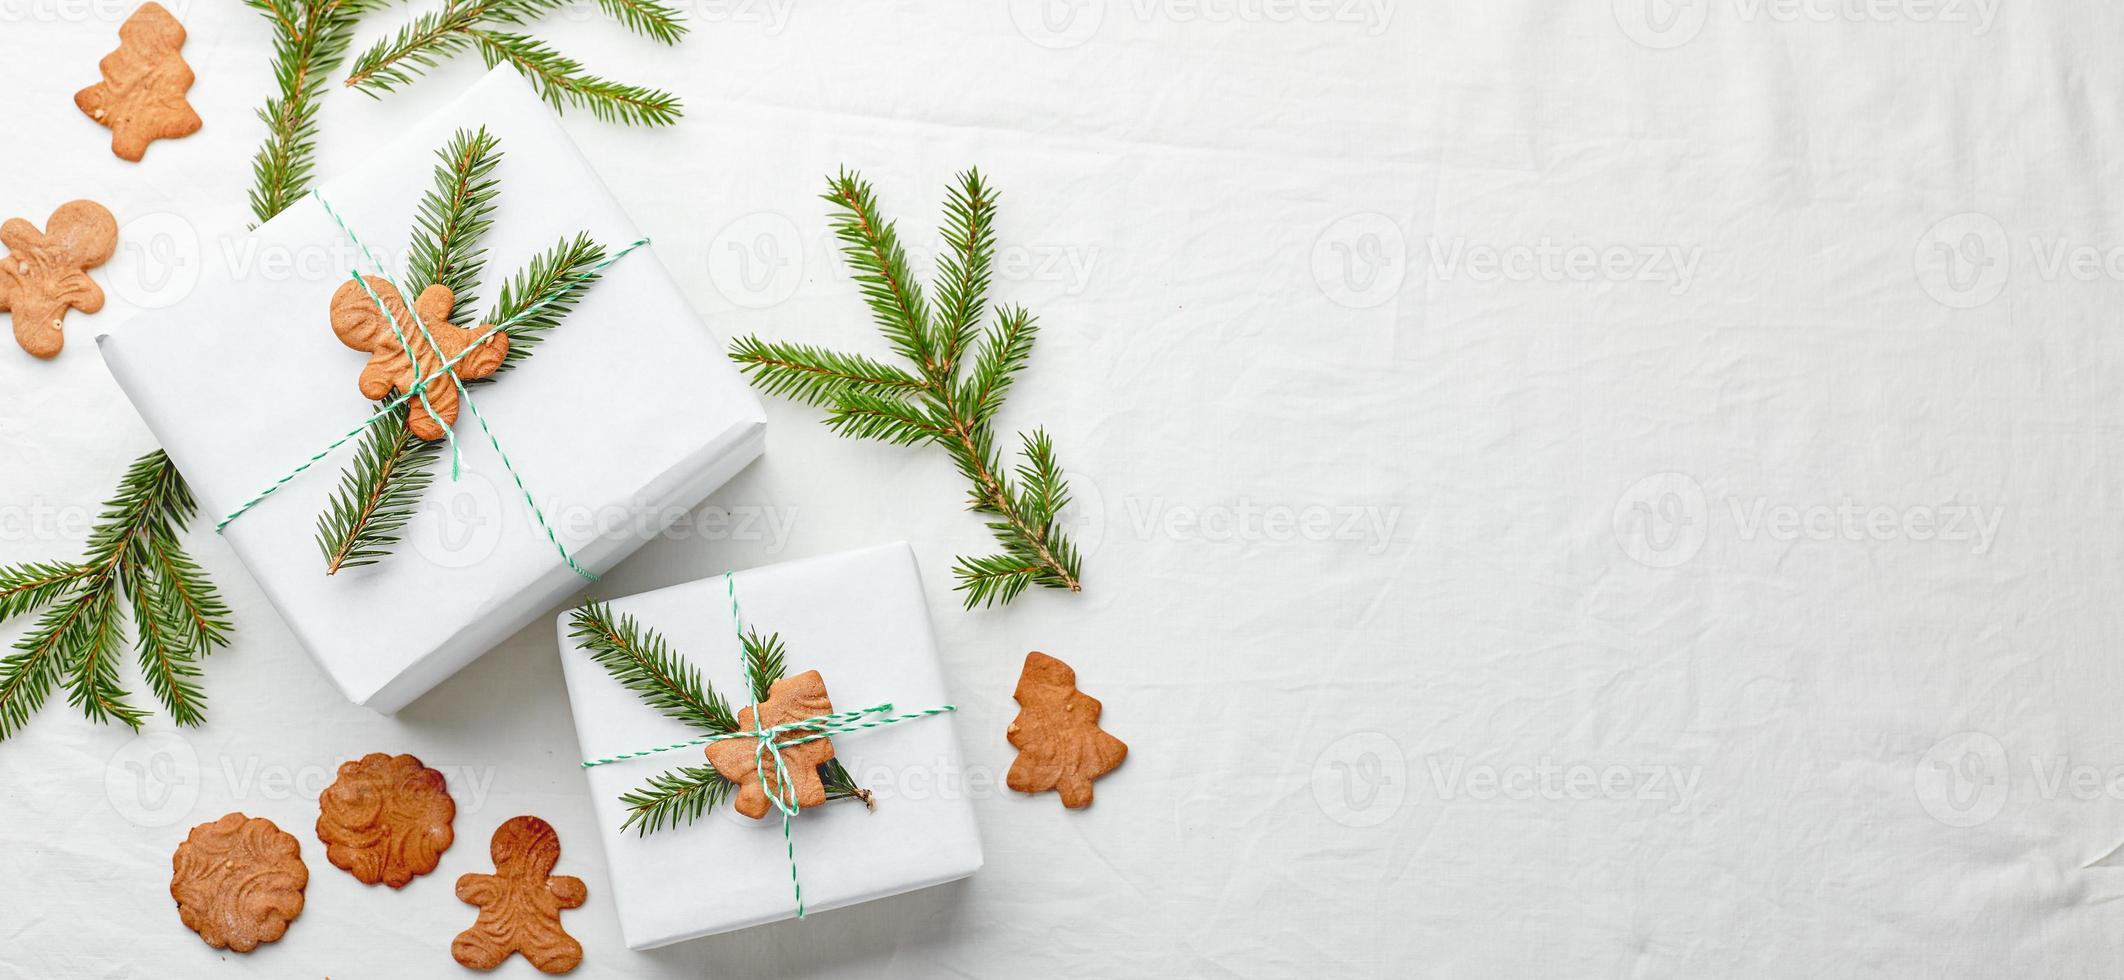 weihnachtsgeschenke eingewickelt in weißes papier und verziert mit fichtenzweigen und lebkuchenplätzchen foto